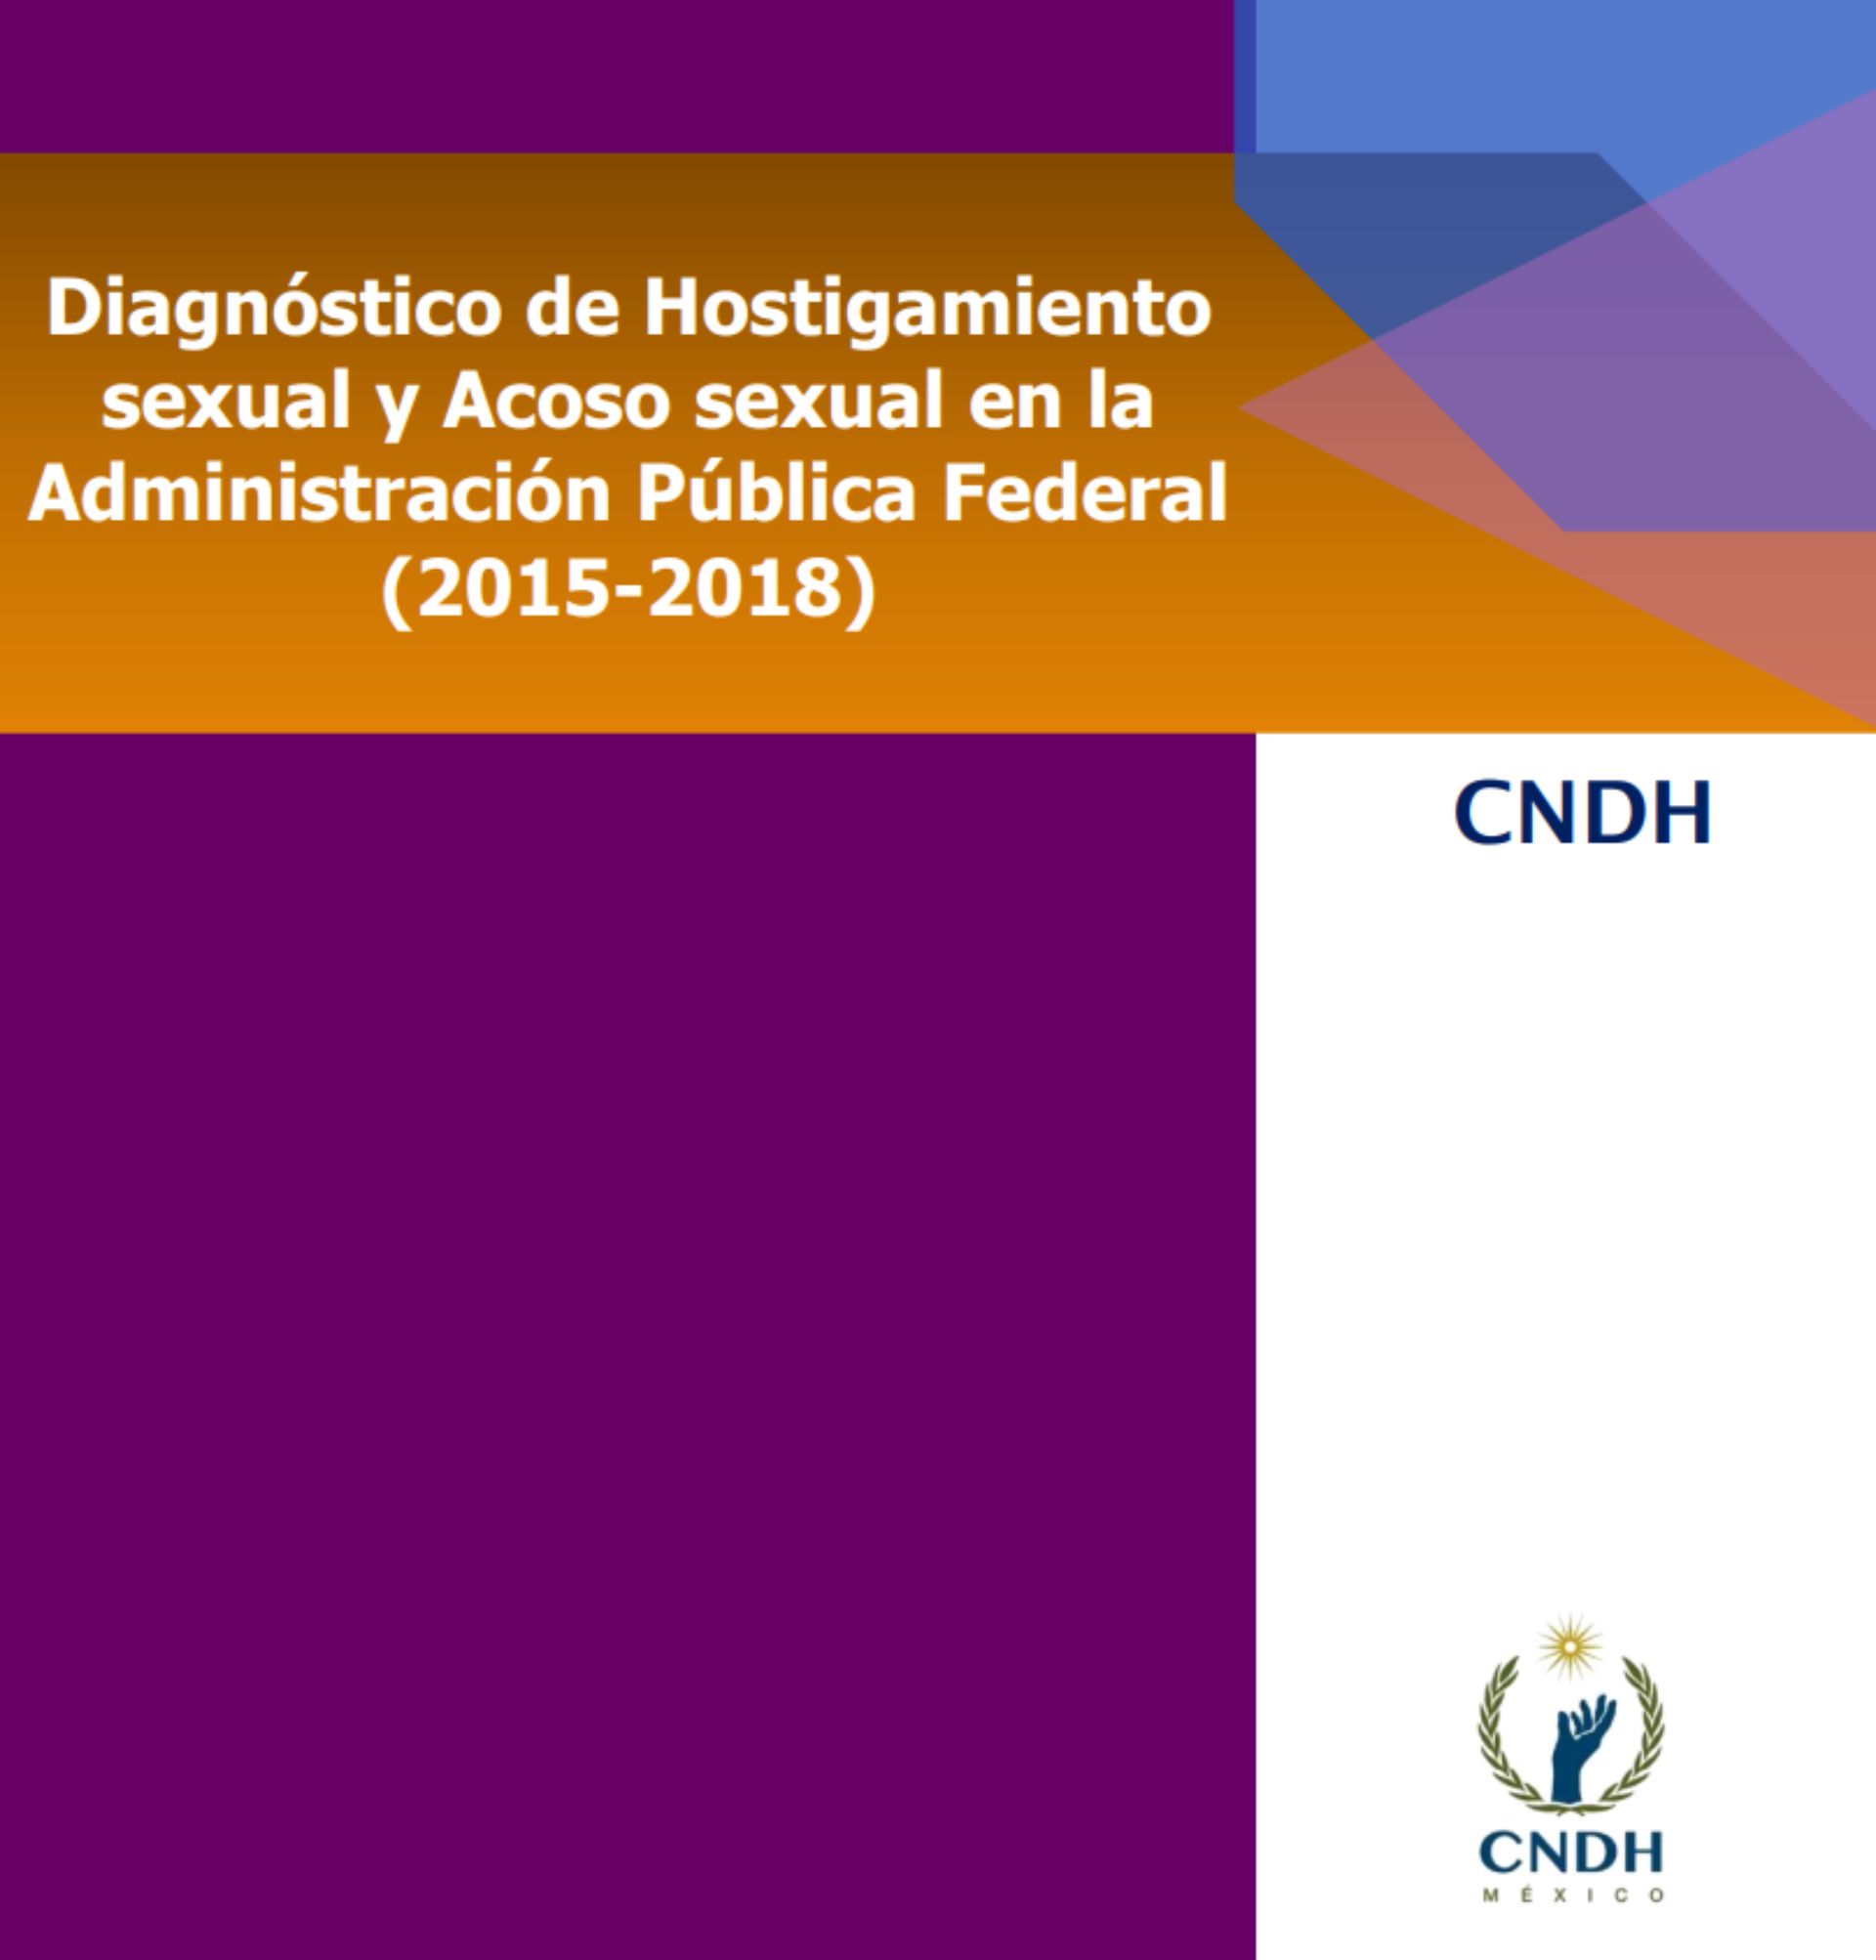 Derechos Humanos presentó su diagnóstico correspondiente al periodo 2015-2018 en instituciones públicas (Foto: CNDH)